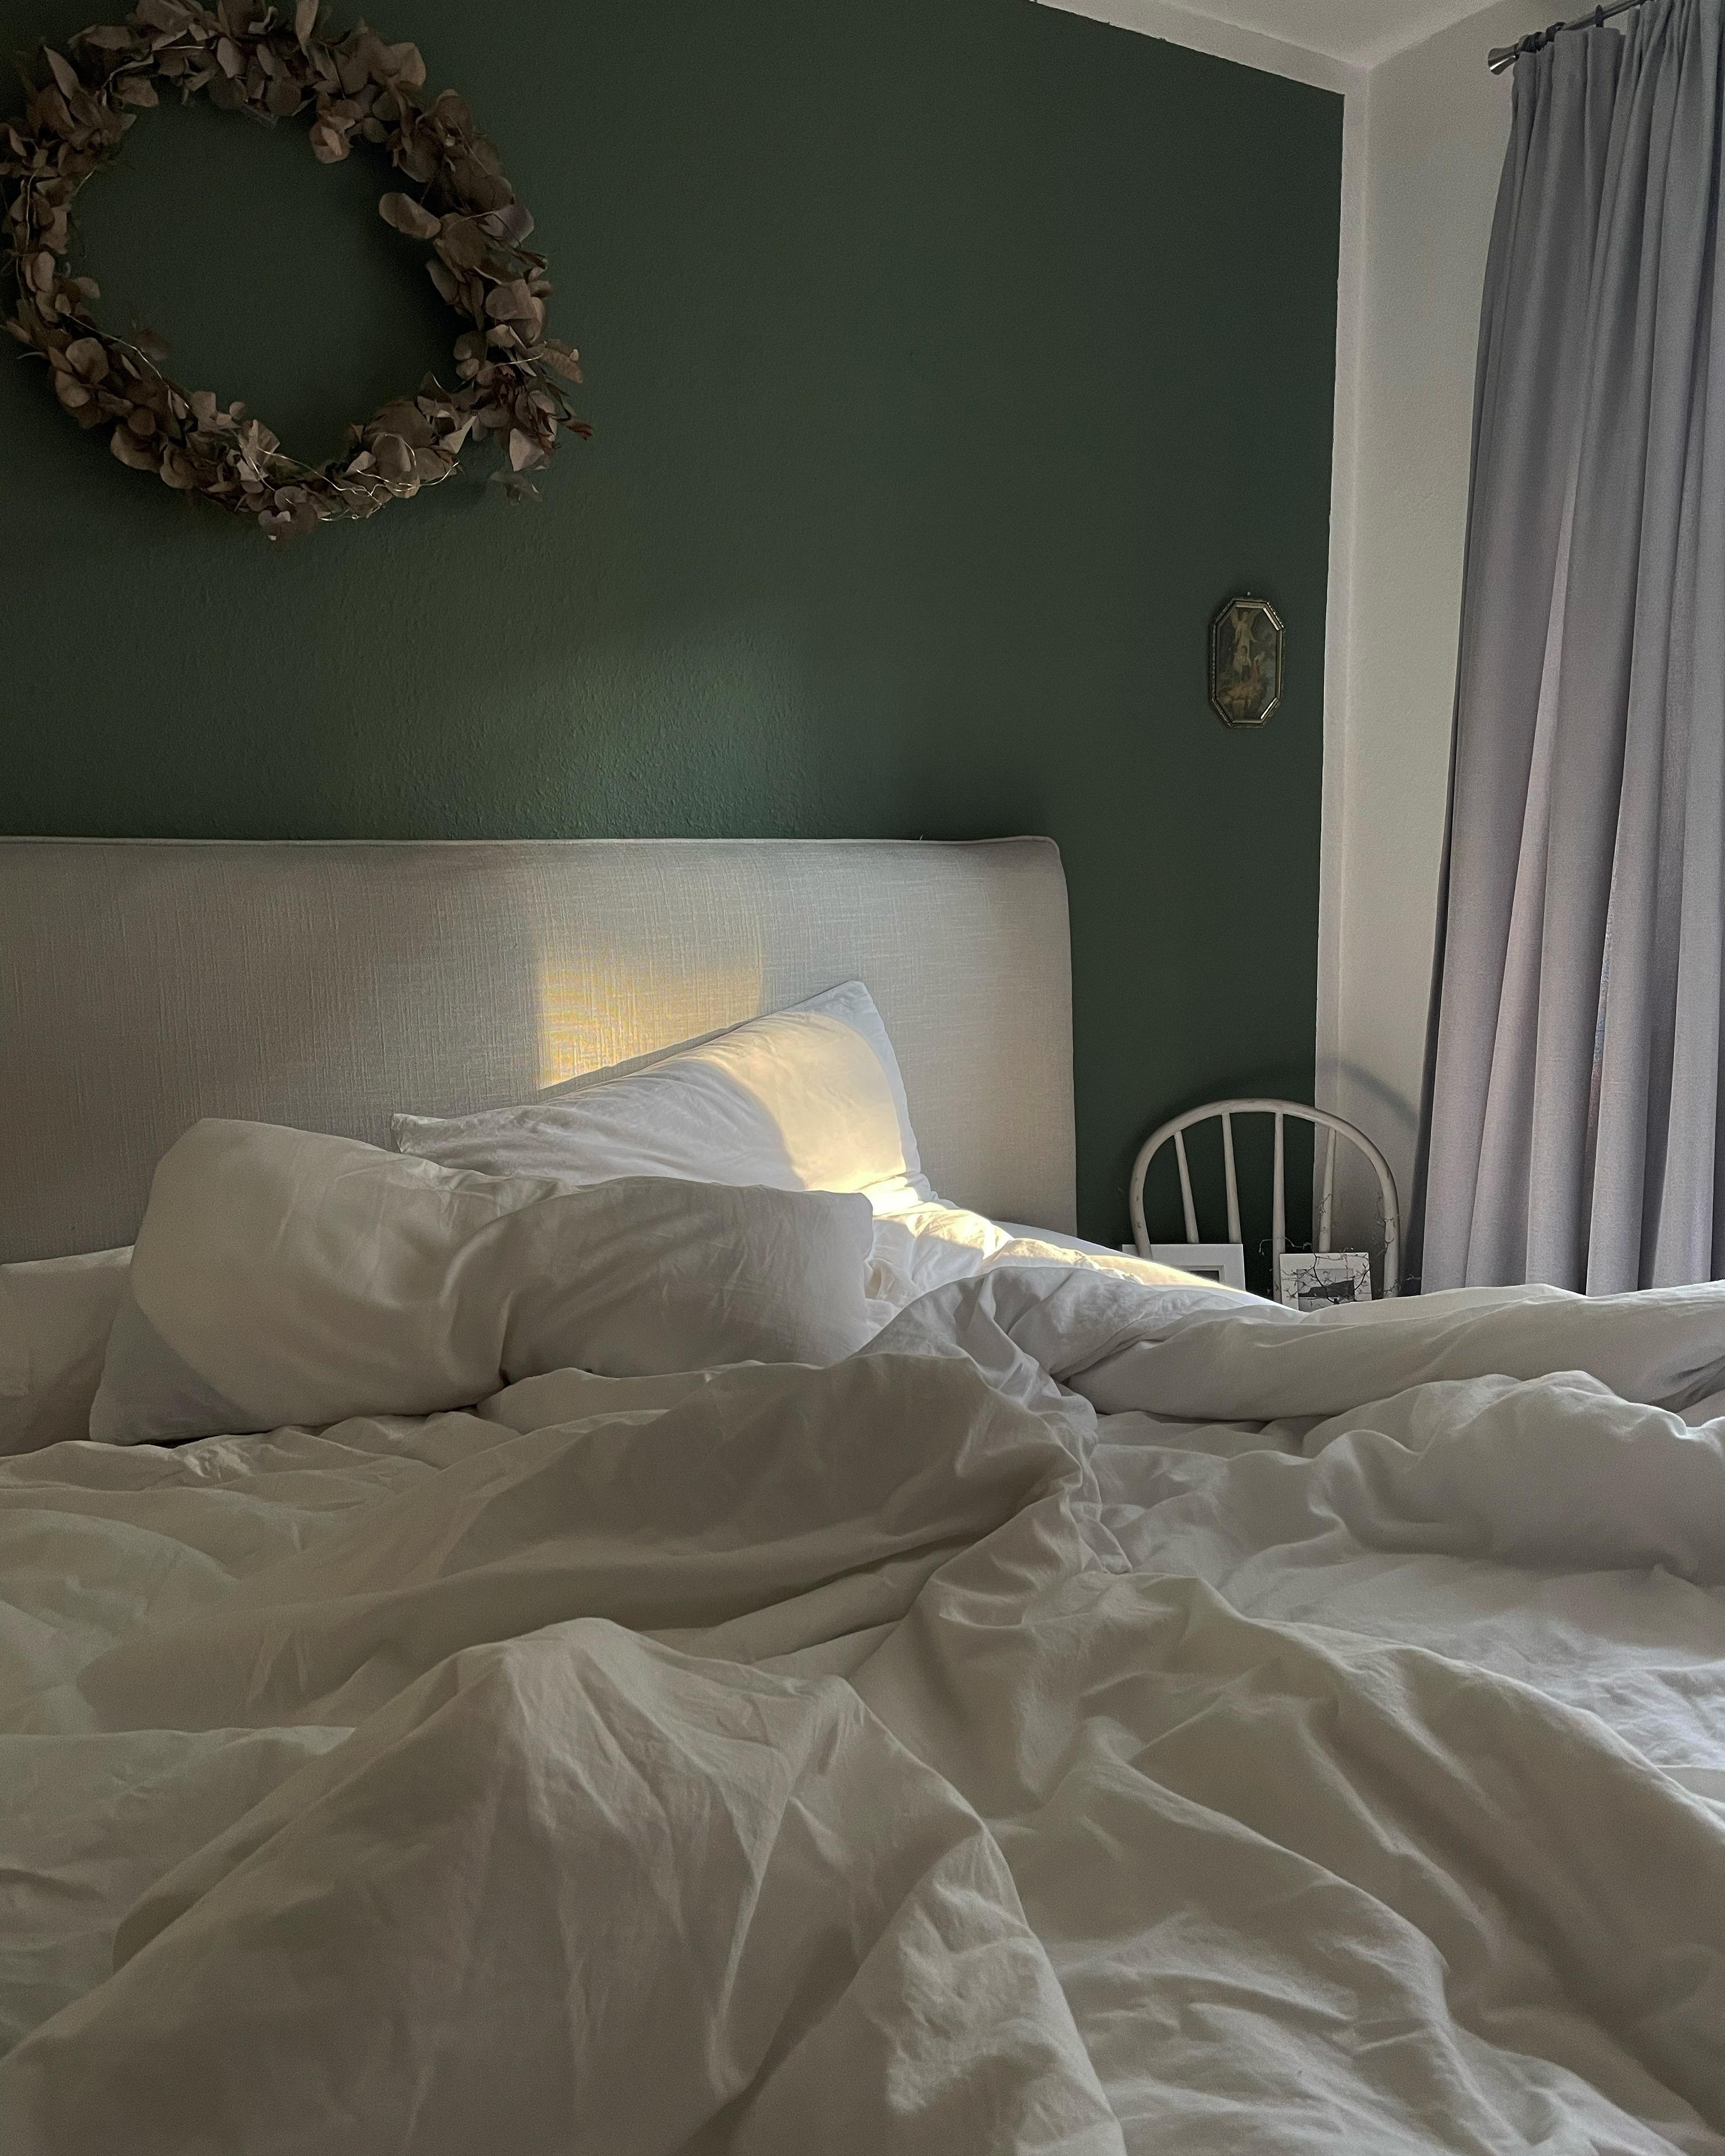 Ungemachte Betten sehen einfach zum Reinspringen aus😍

@welcome.at_margi

#wolkenfeld #bettwäsche #schlafzimmer #herbst